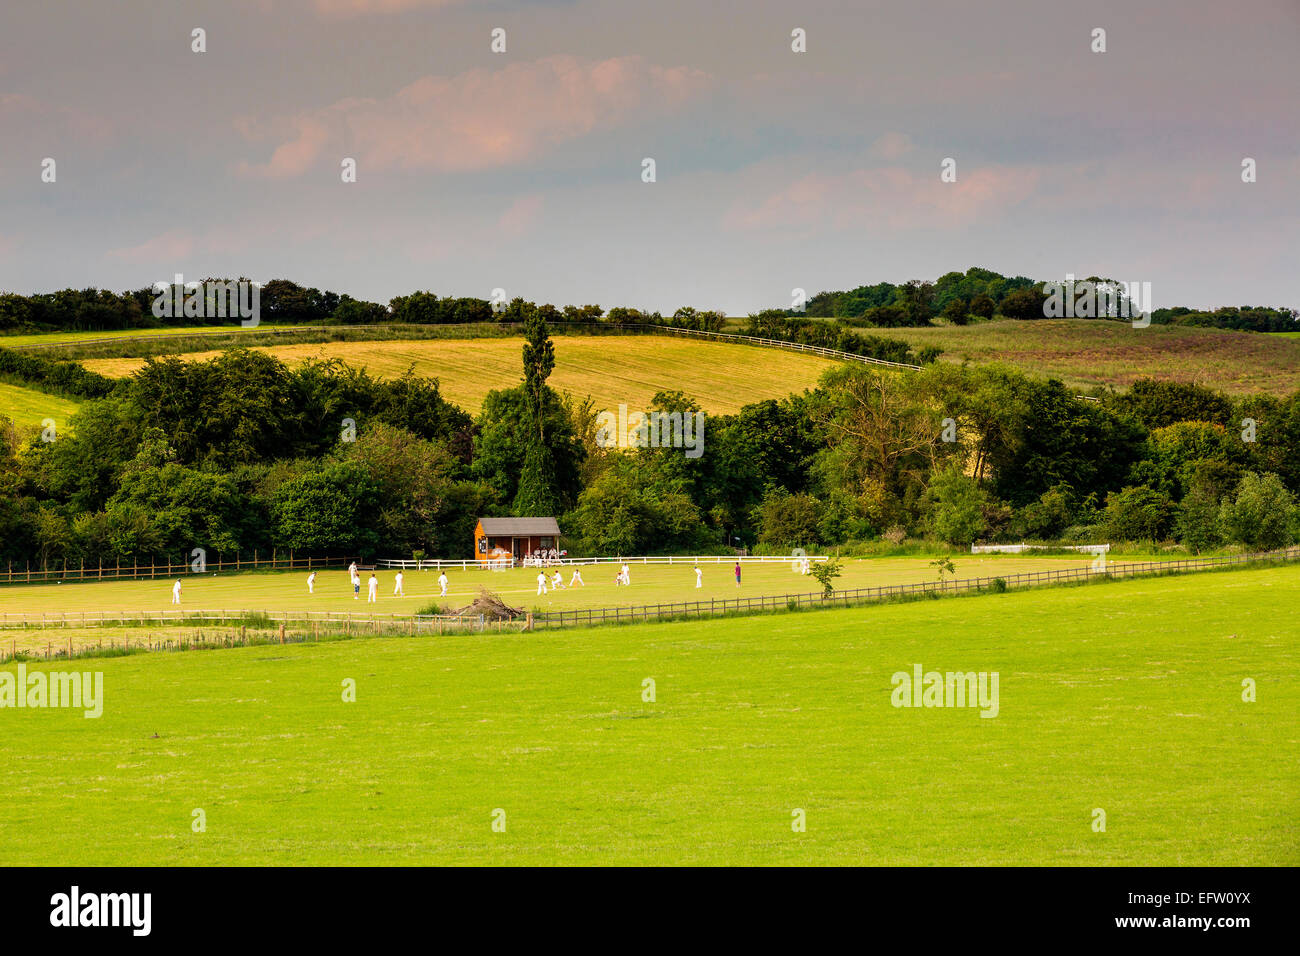 Scène rurale avec vue éloignée sur le cricket field et match, Oxfordshire, Angleterre Banque D'Images